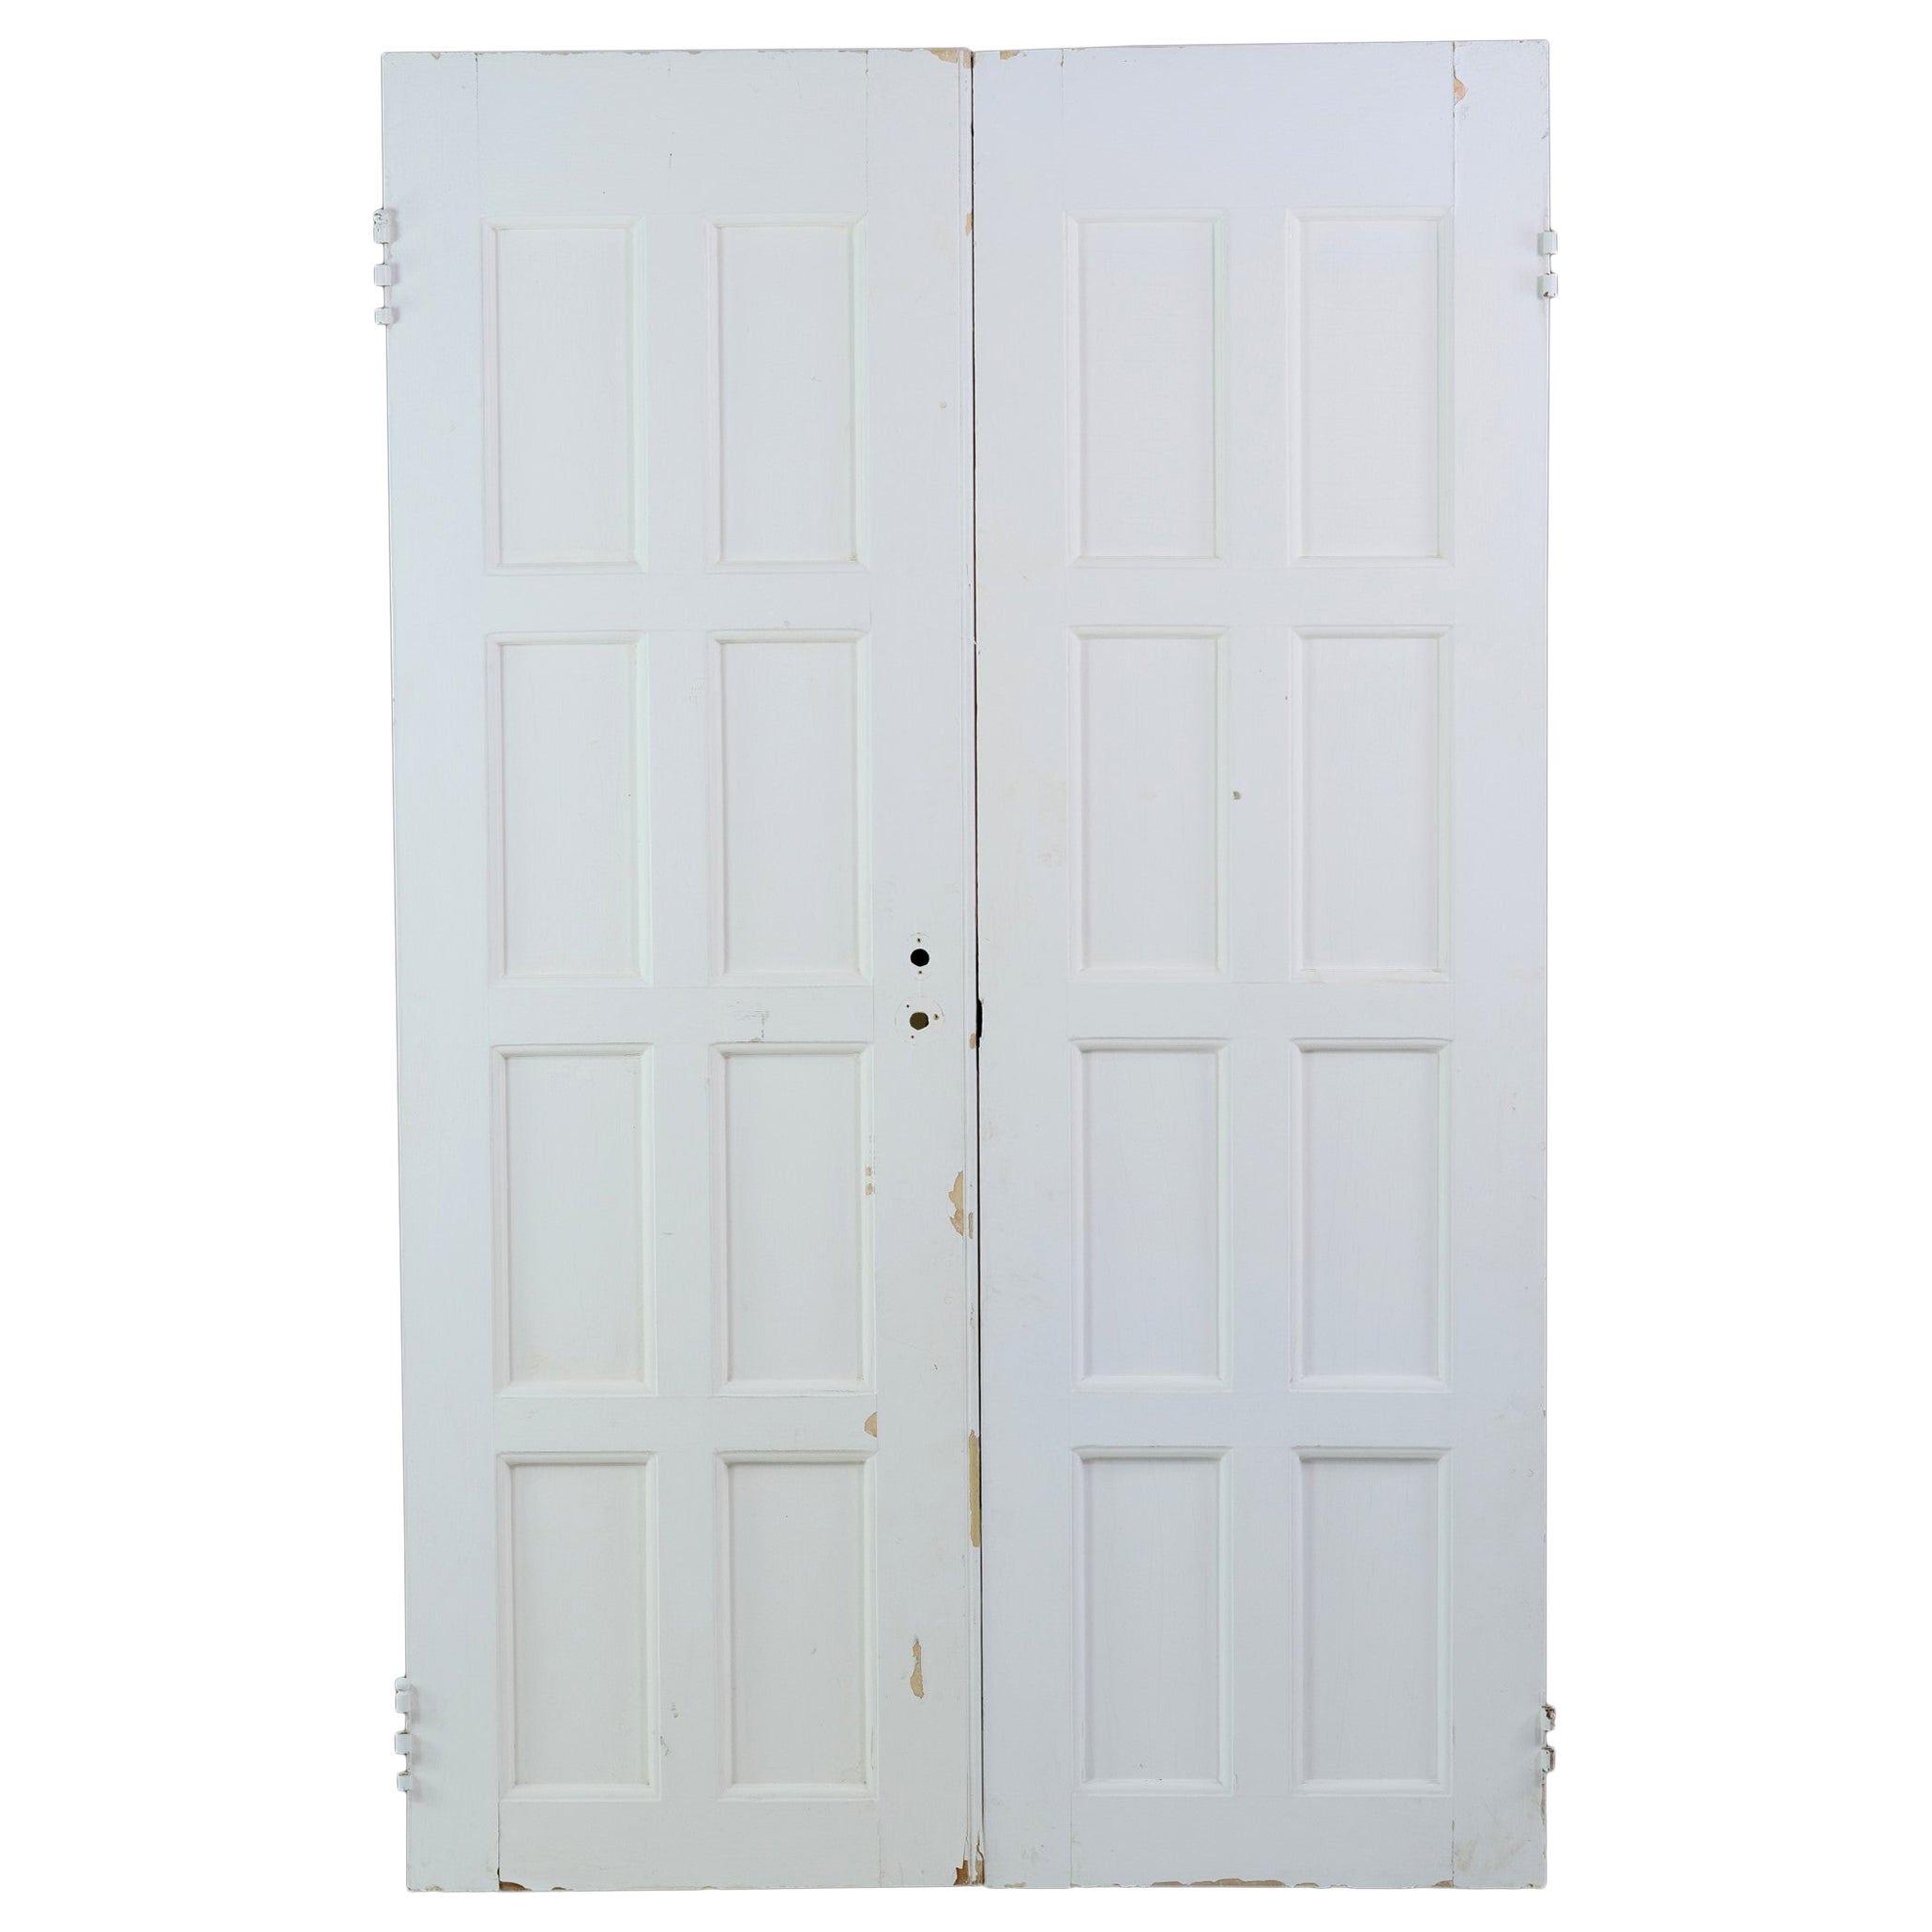 Ensemble de 8 portes en bois anciennes avec panneaux verticaux et panneaux blancs peints